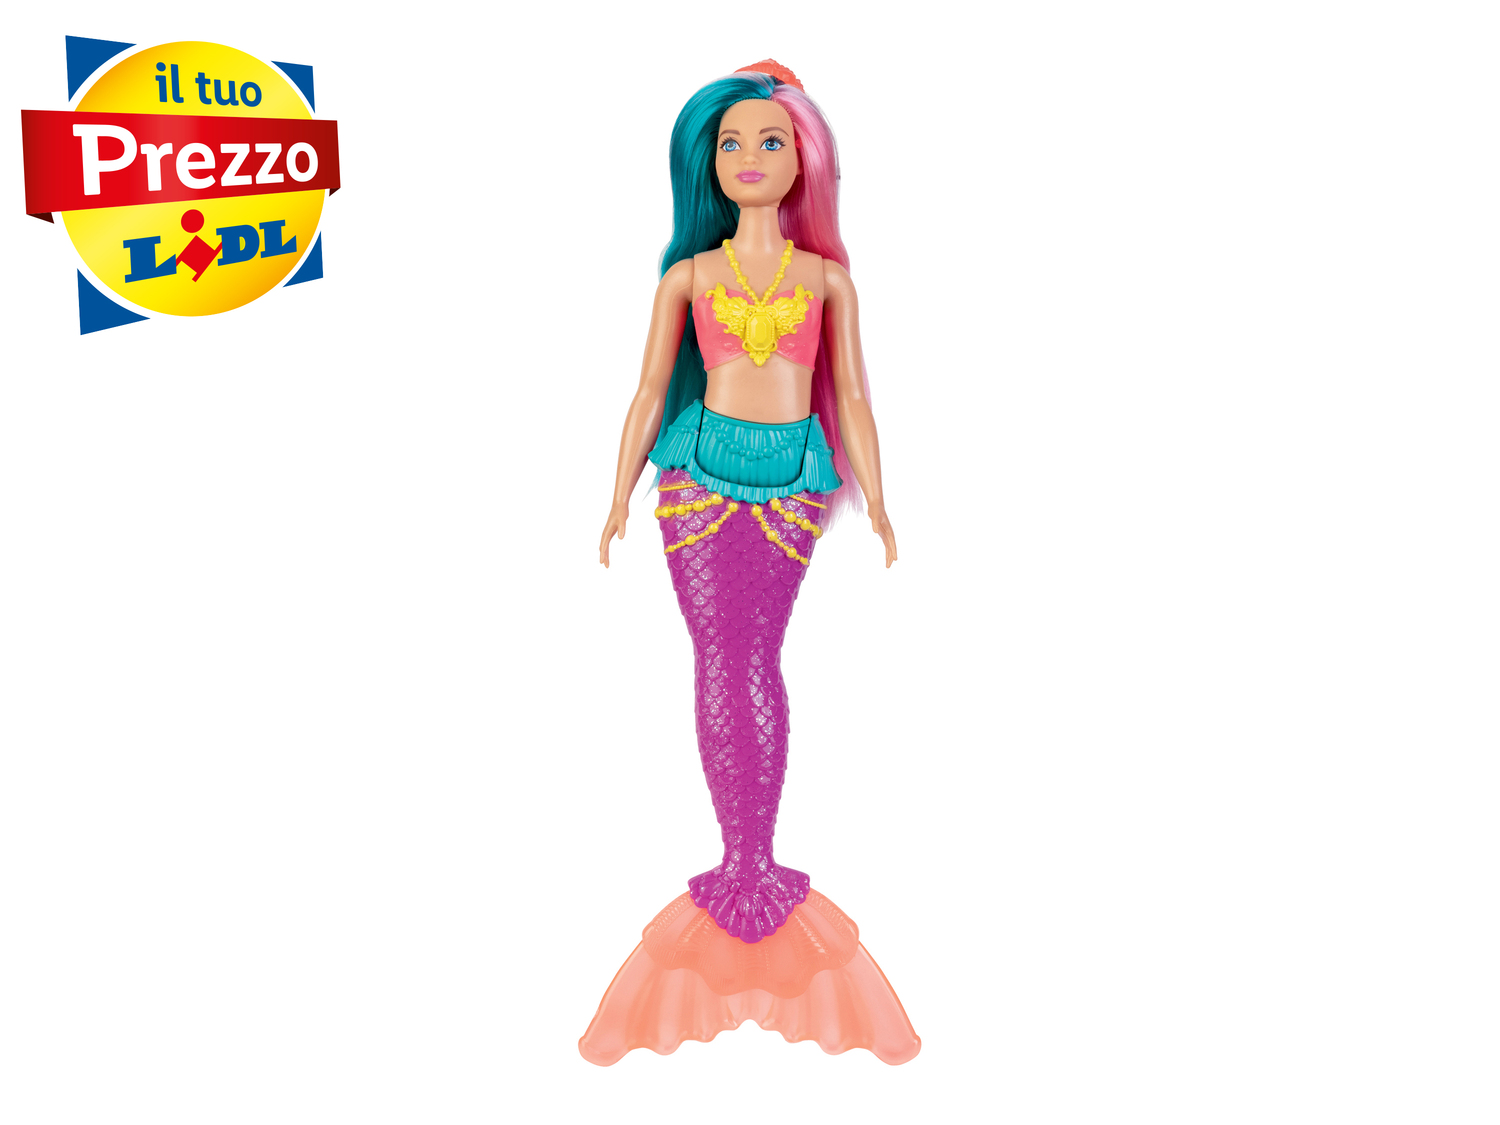 Bambola Barbie o macchinina Hot Wheels Mattel, prezzo 7.99 € 

Caratteristiche

- ...